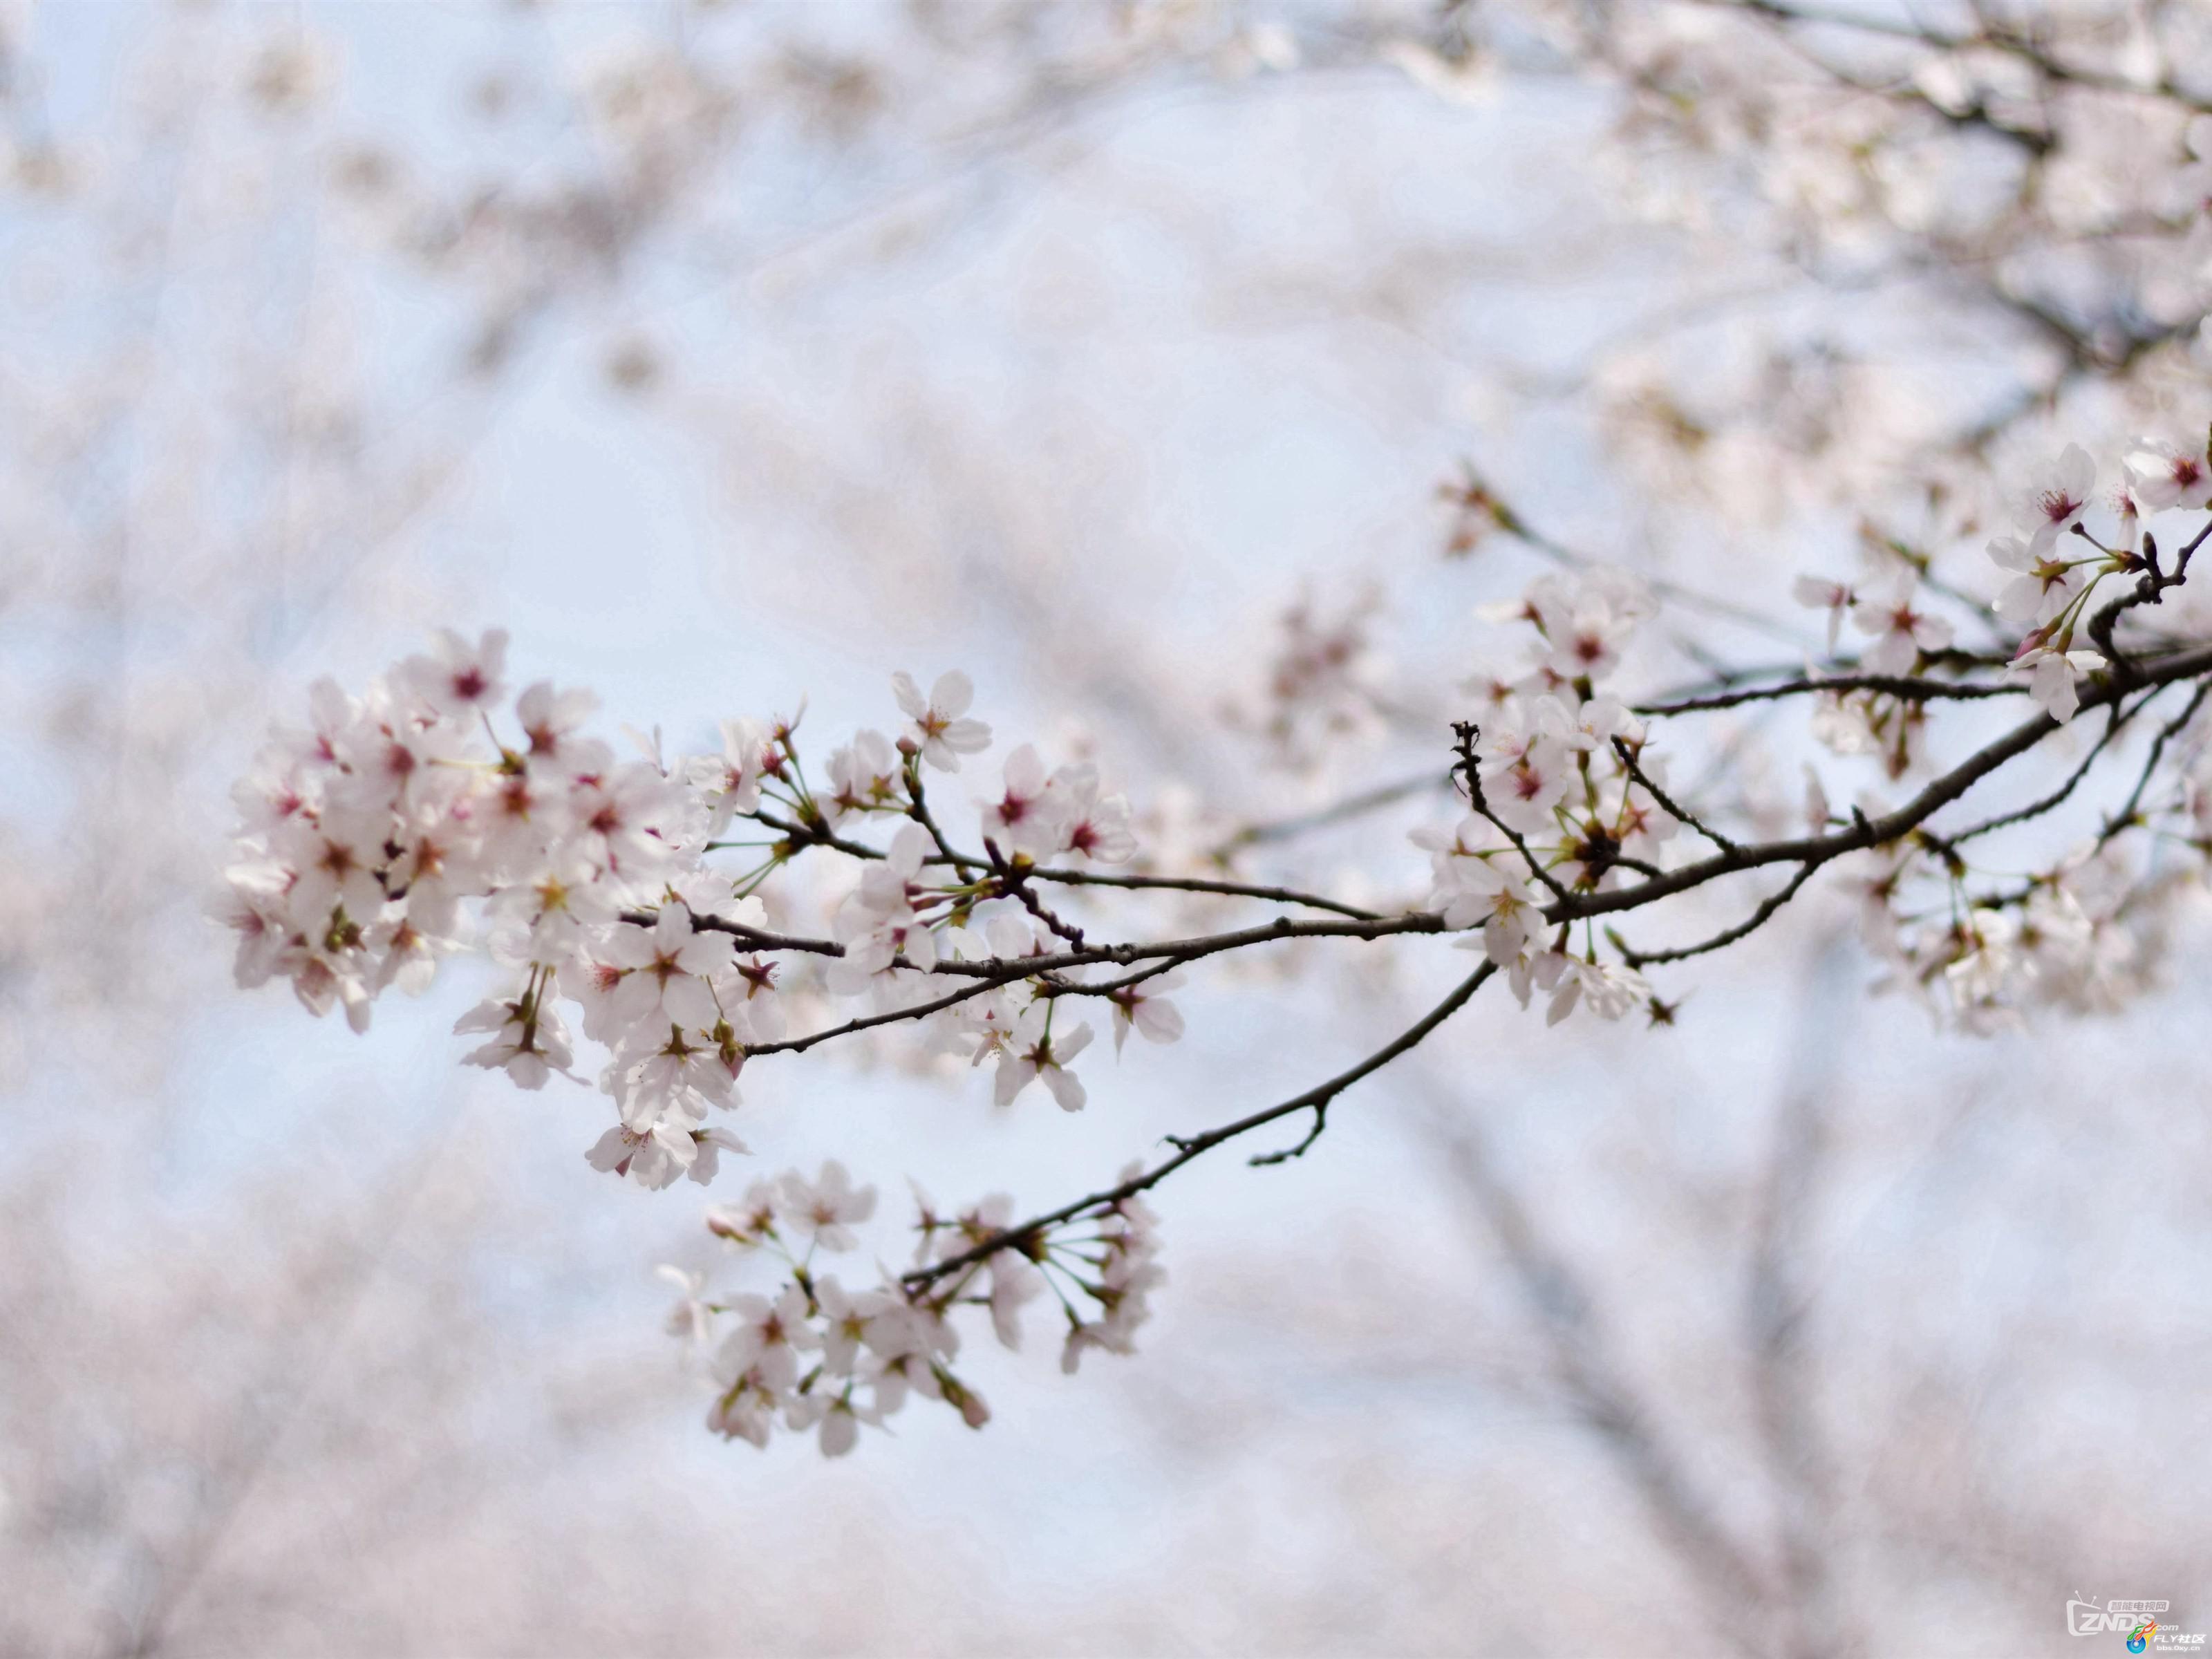 壁纸1600×1200日本樱花图片 Japanese Sakura Cherry Blossom Photos壁纸,三月樱花节-樱花壁纸壁纸 ...